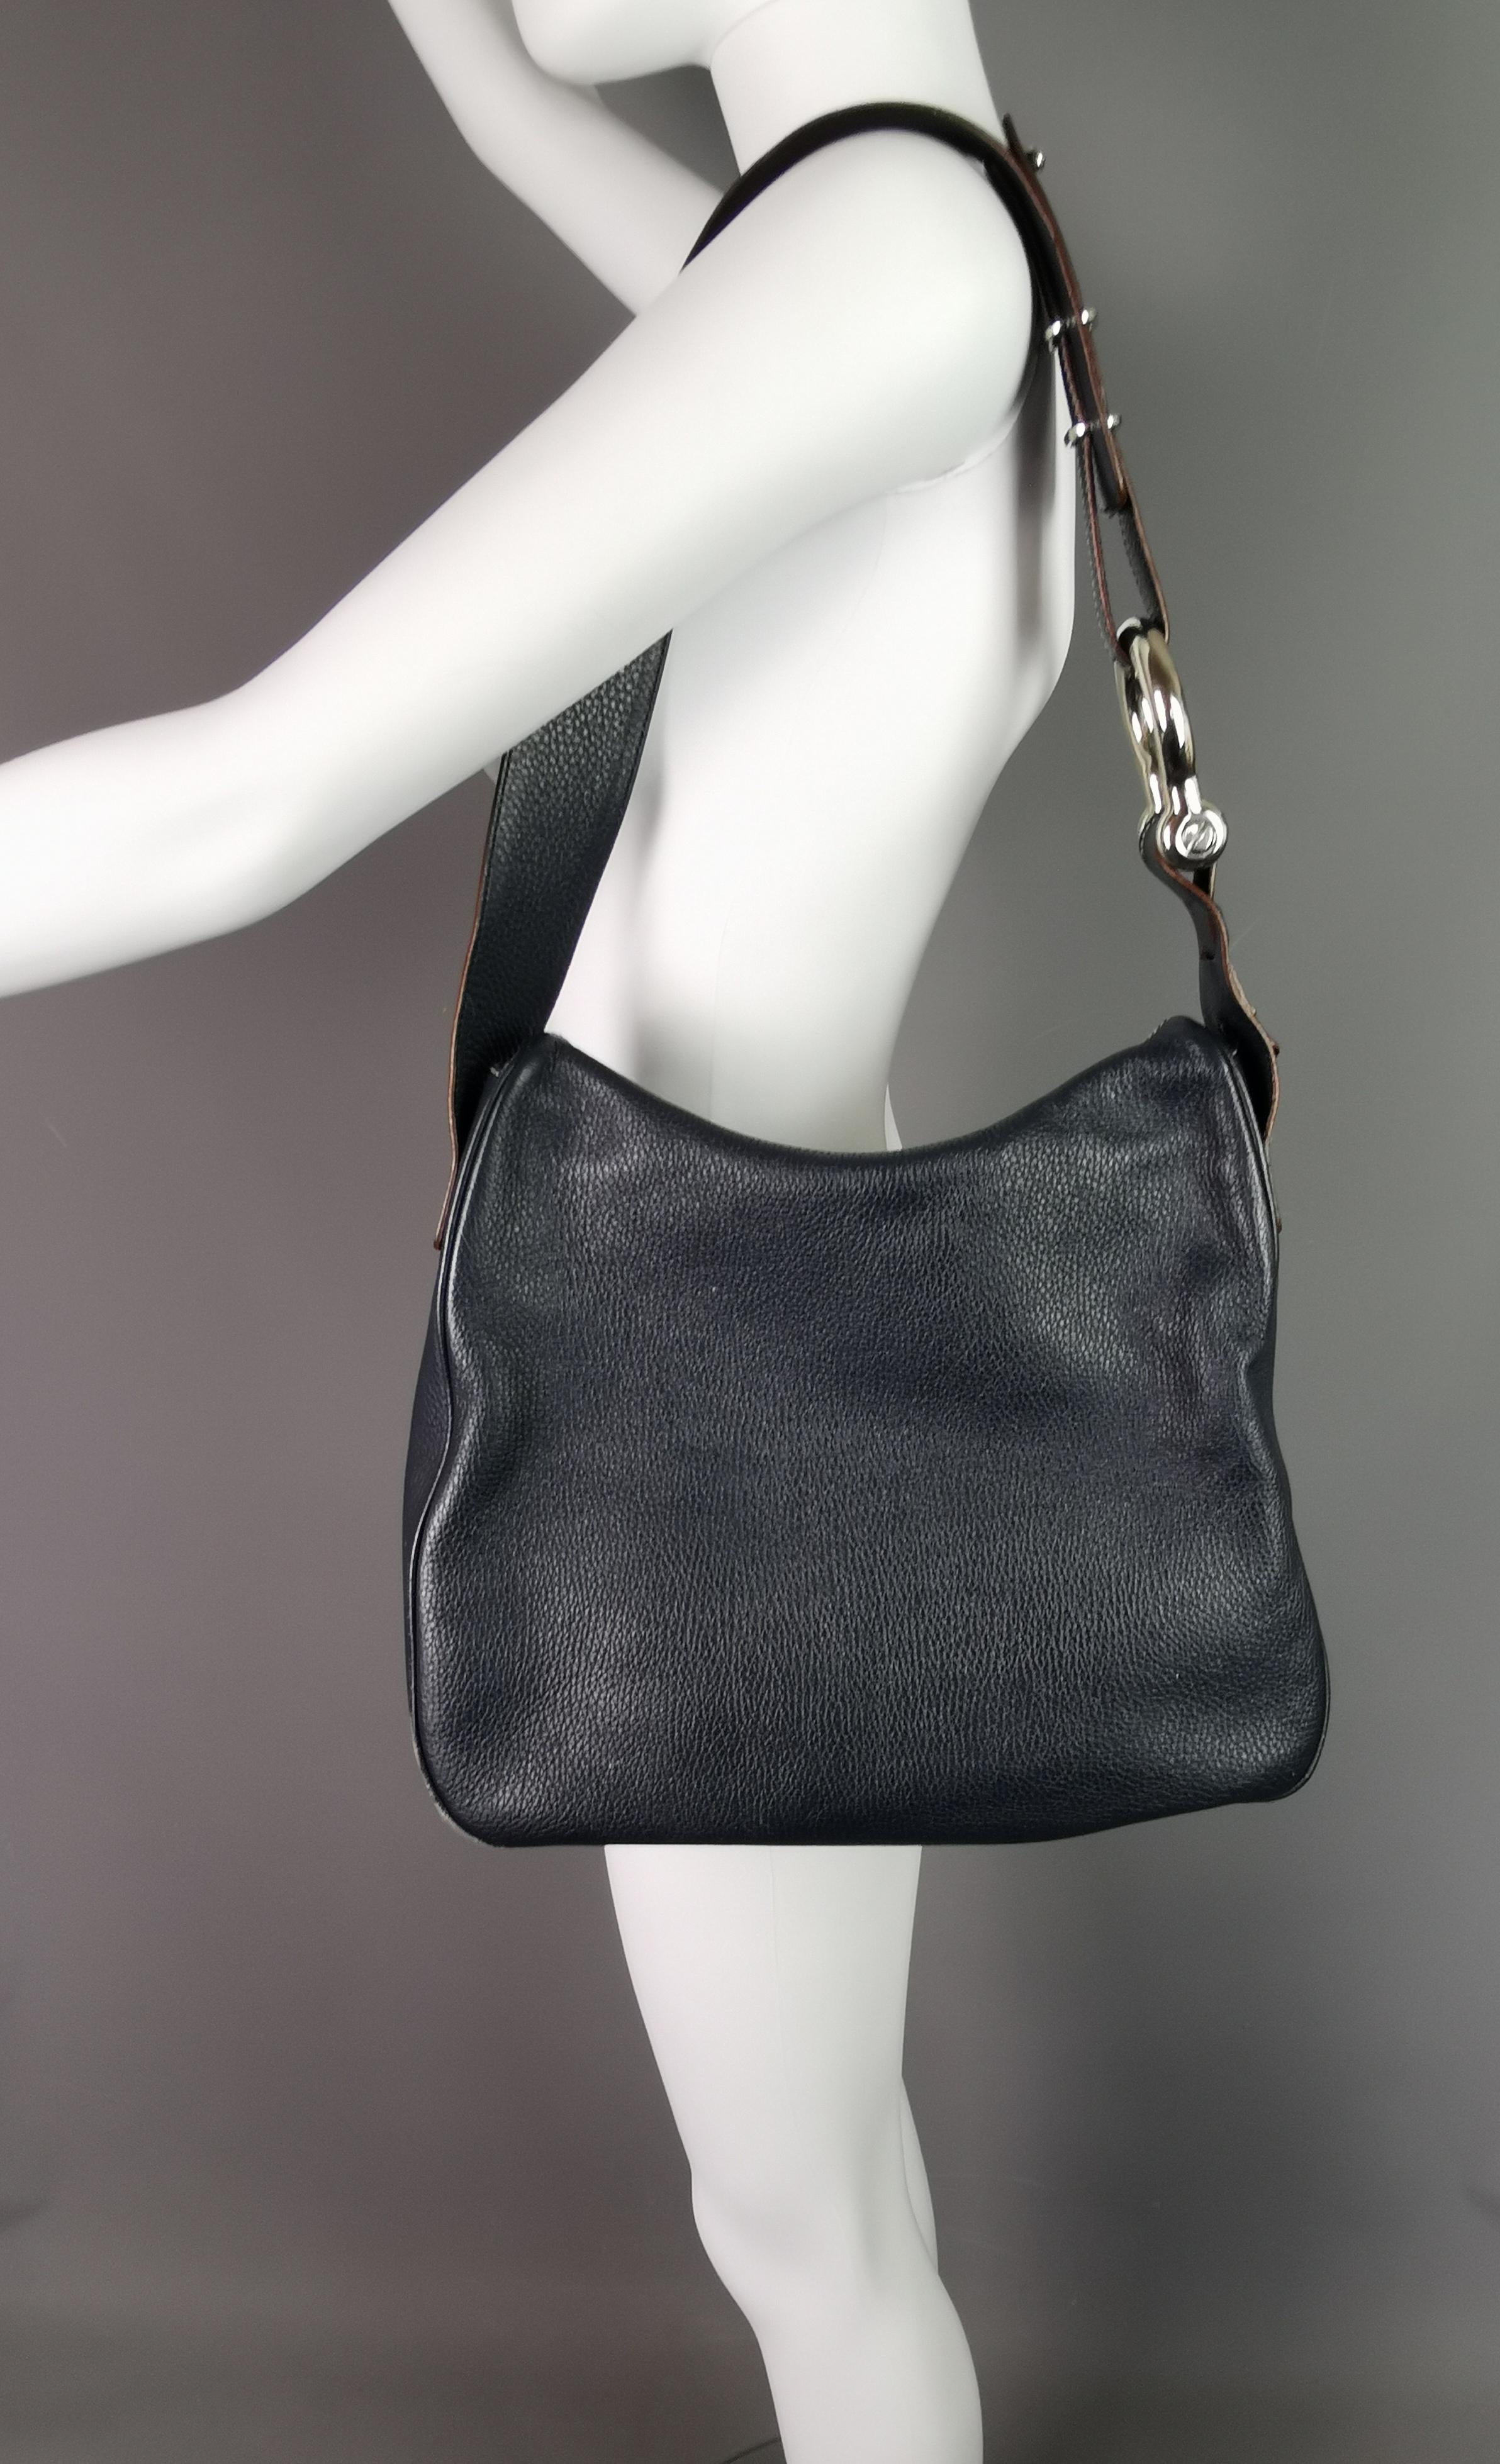 Burberry navy blue pebble leather handbag, Shoulder bag  9